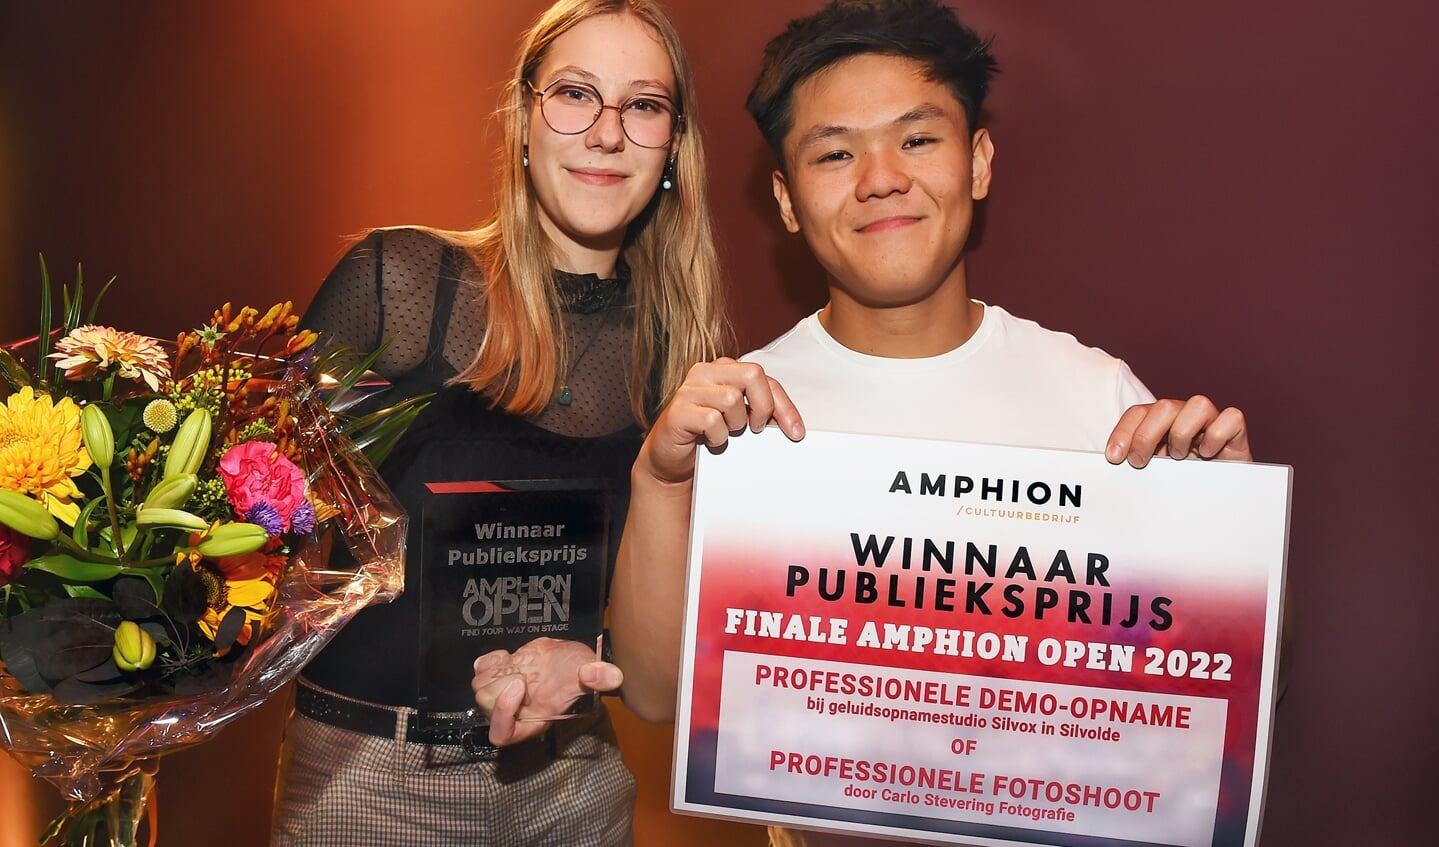 Publieksprijs Amphion open voor links Merel Geerdink en James Hu uit Winterswijk.